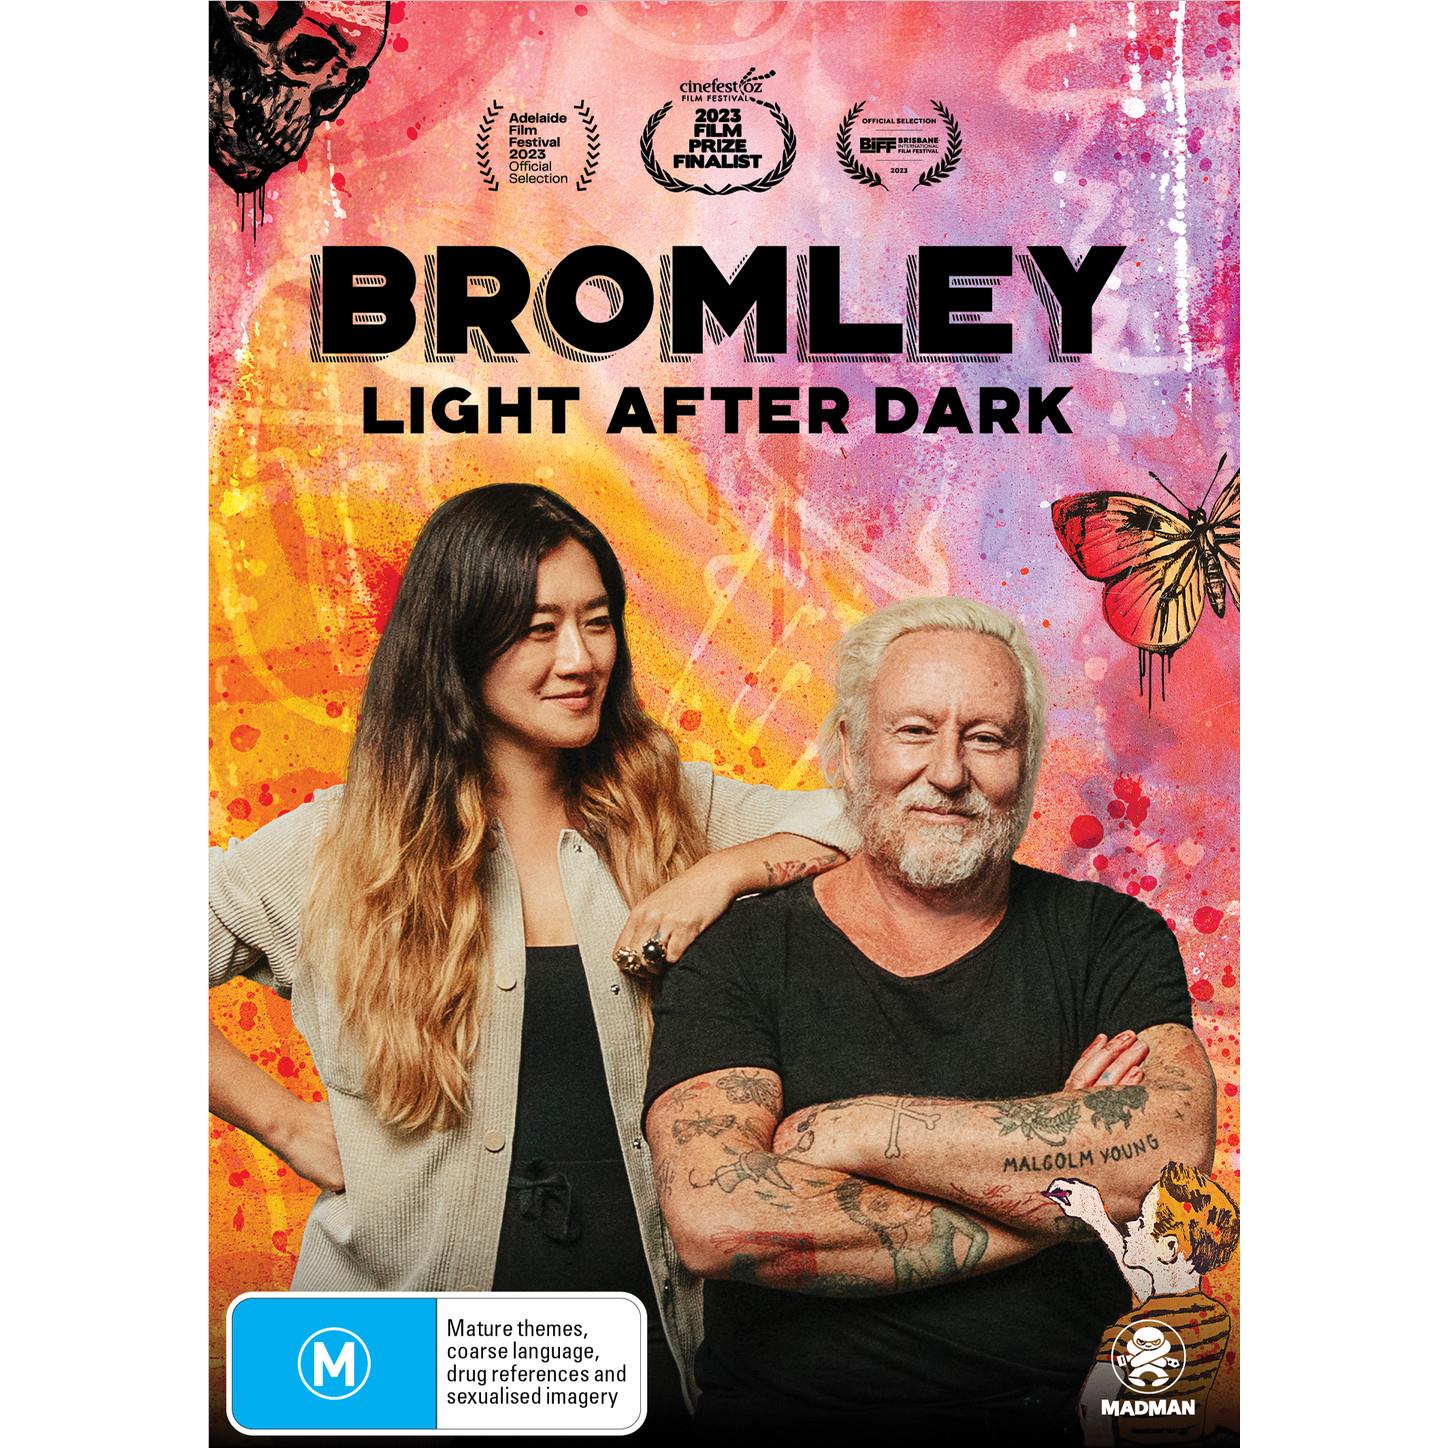 BROMLEY: Light After Dark DVD